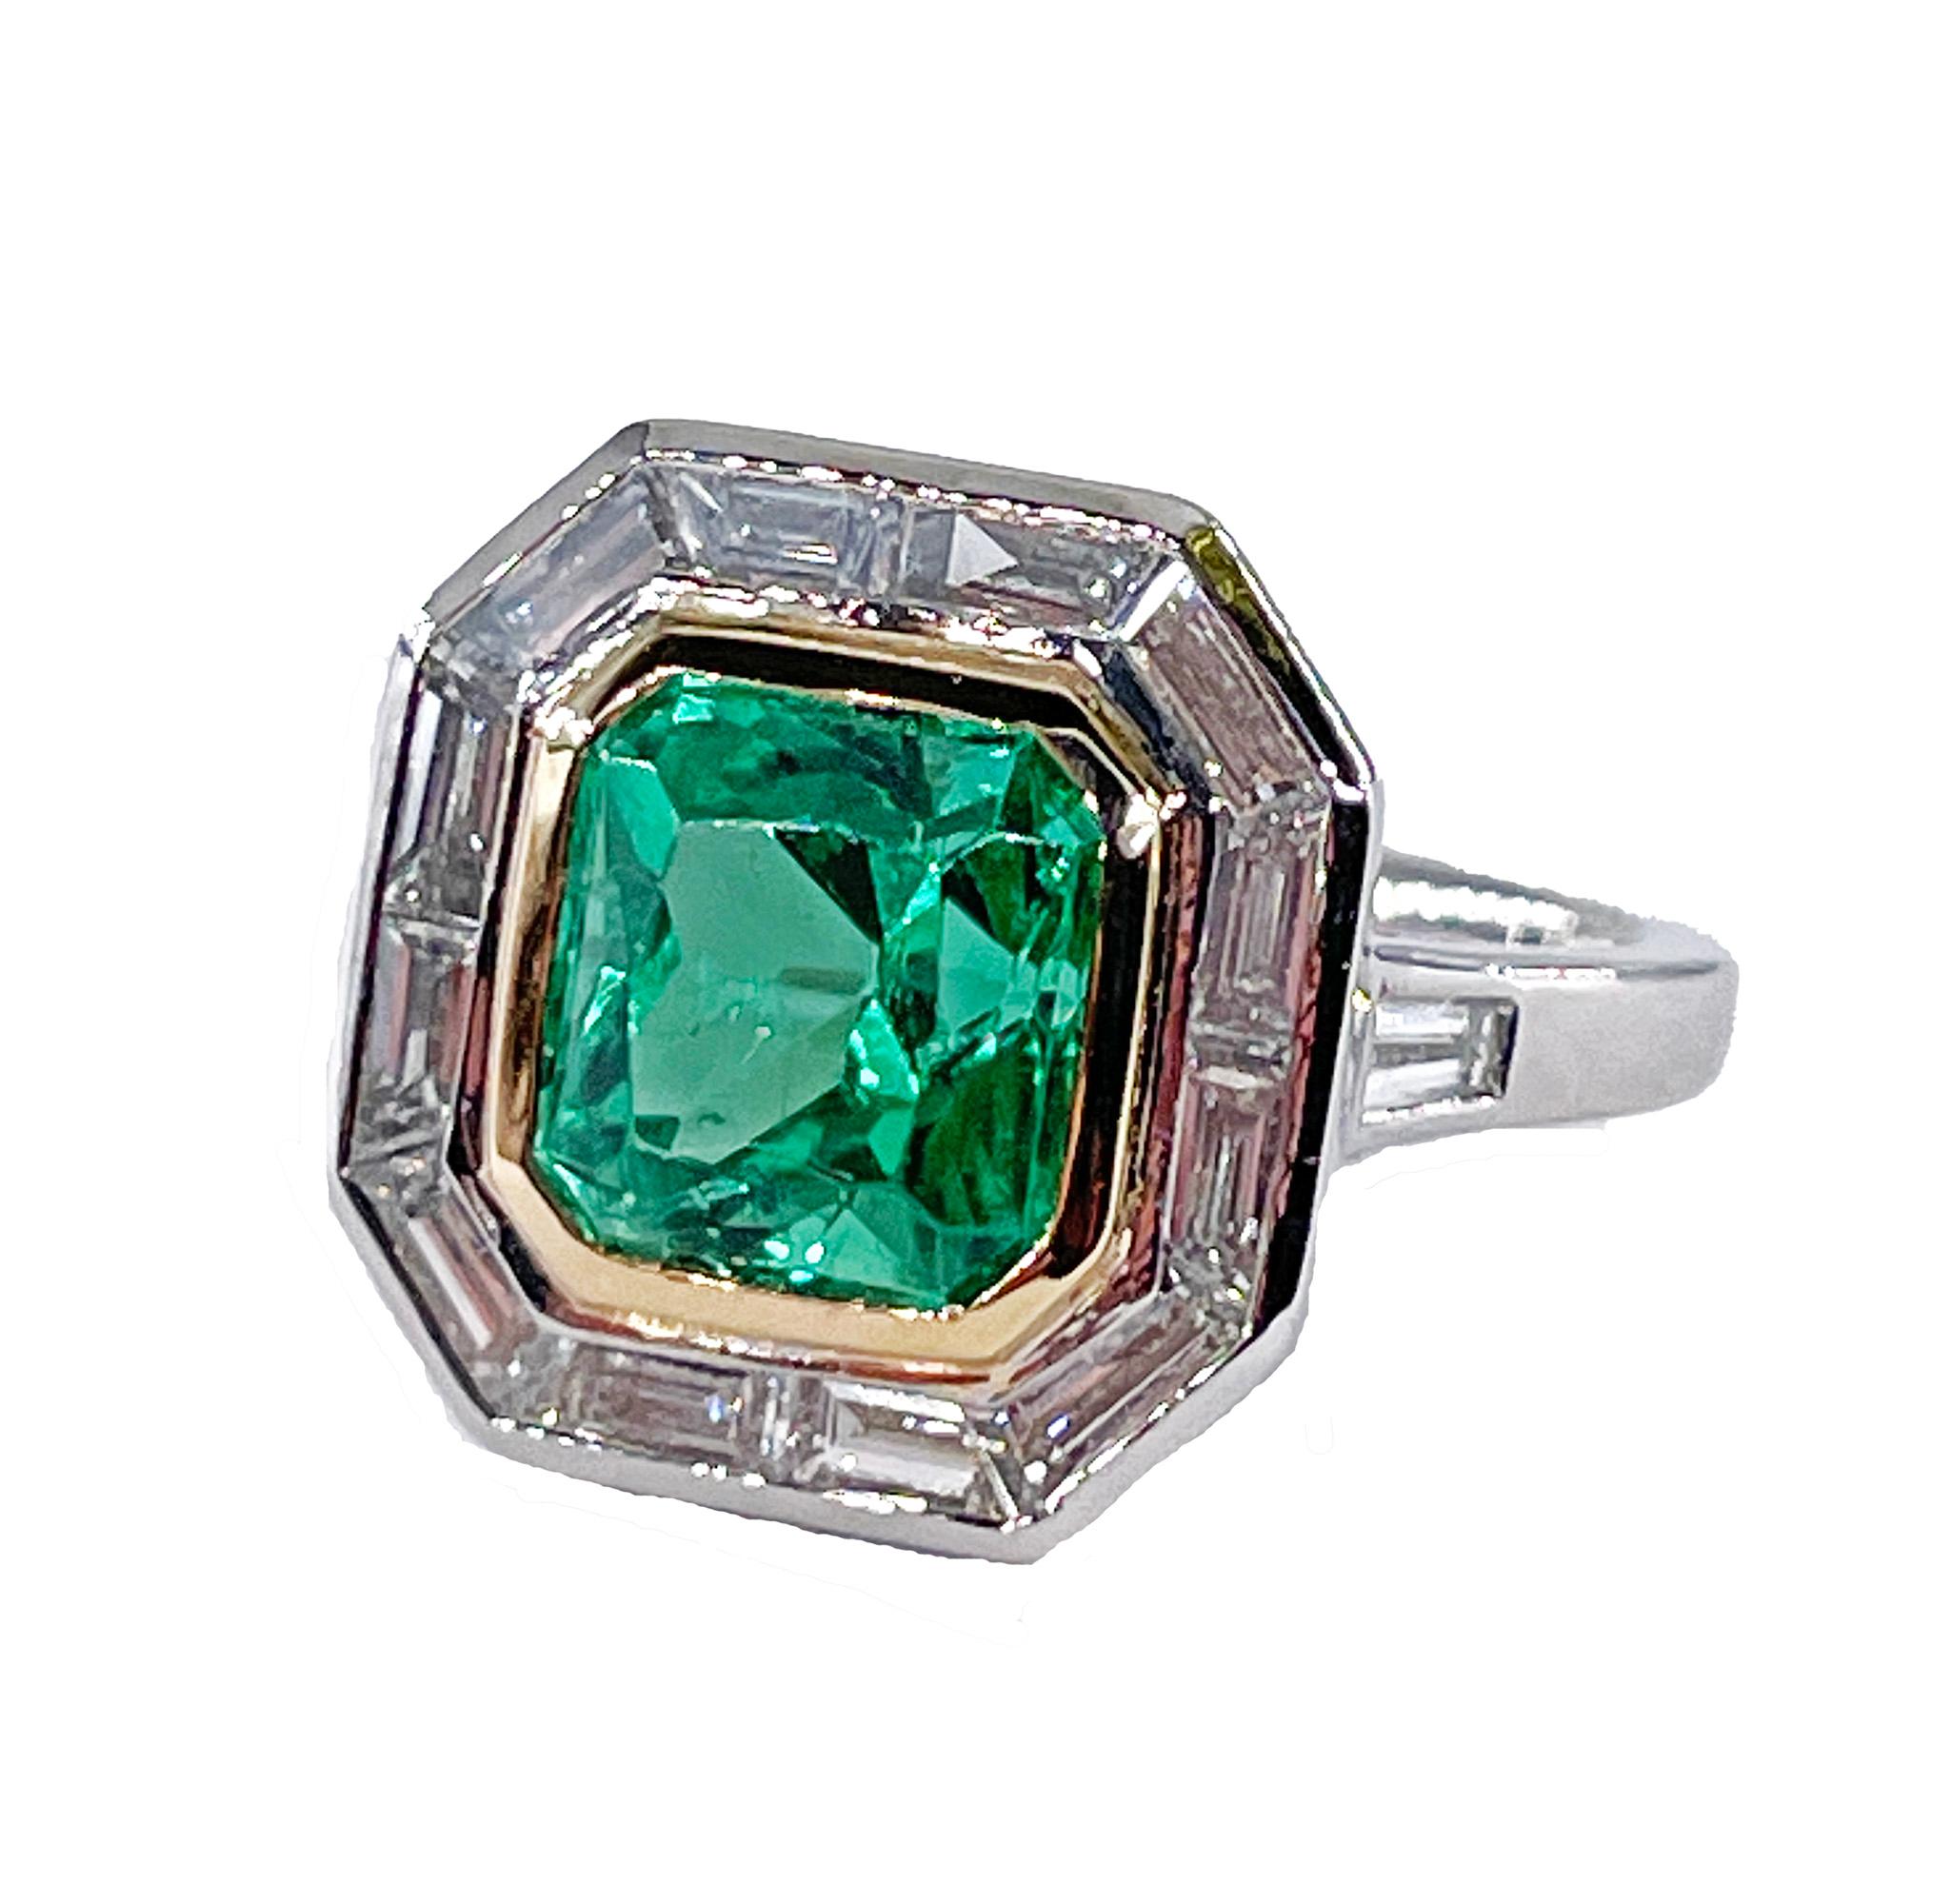 Seltene unbedeutende AGL 4,66ctw natürlichen grünen Smaragd Diamant Verlobung Jahrestag Platin 18K Ring

Der bezaubernde grüne Edelstein Smaragd macht seinem Ruf als König der Juwelen alle Ehre. Wenn Sie auf der Suche nach etwas anderem als einem